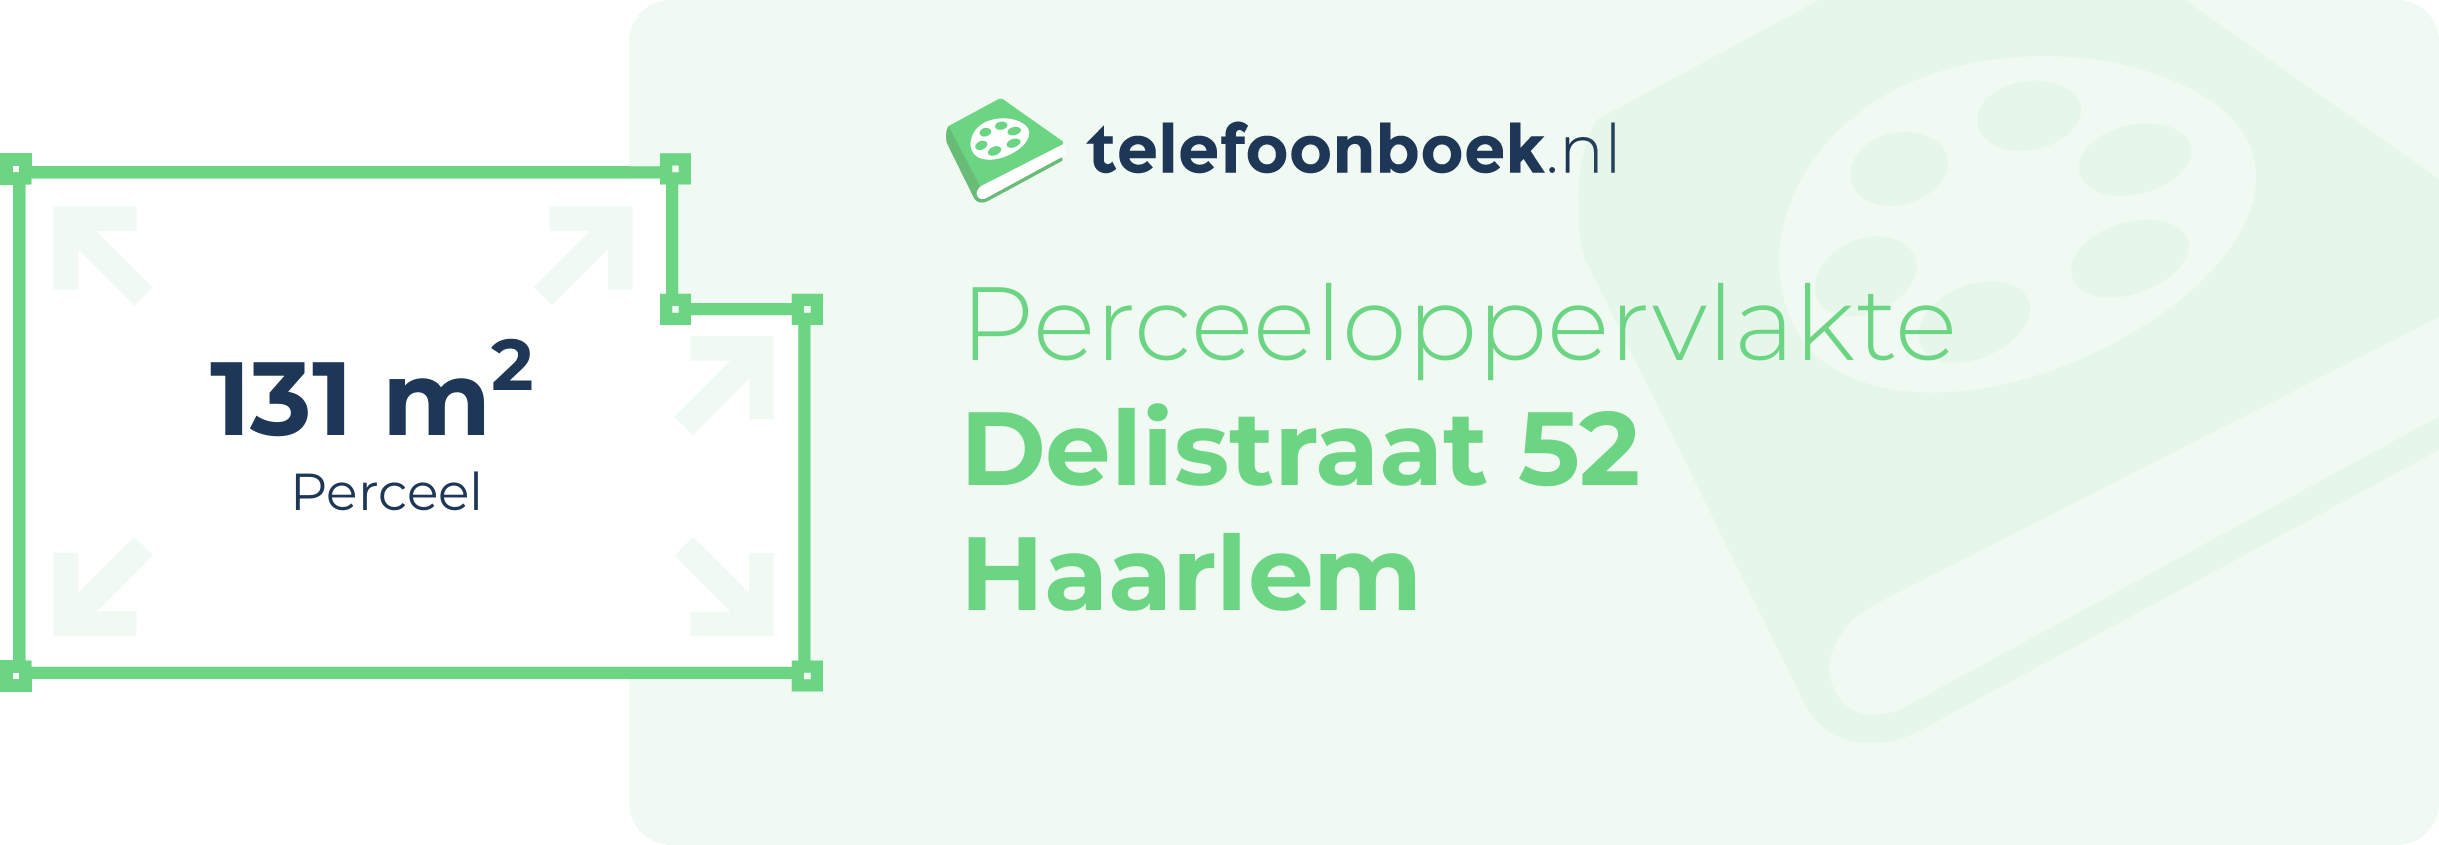 Perceeloppervlakte Delistraat 52 Haarlem